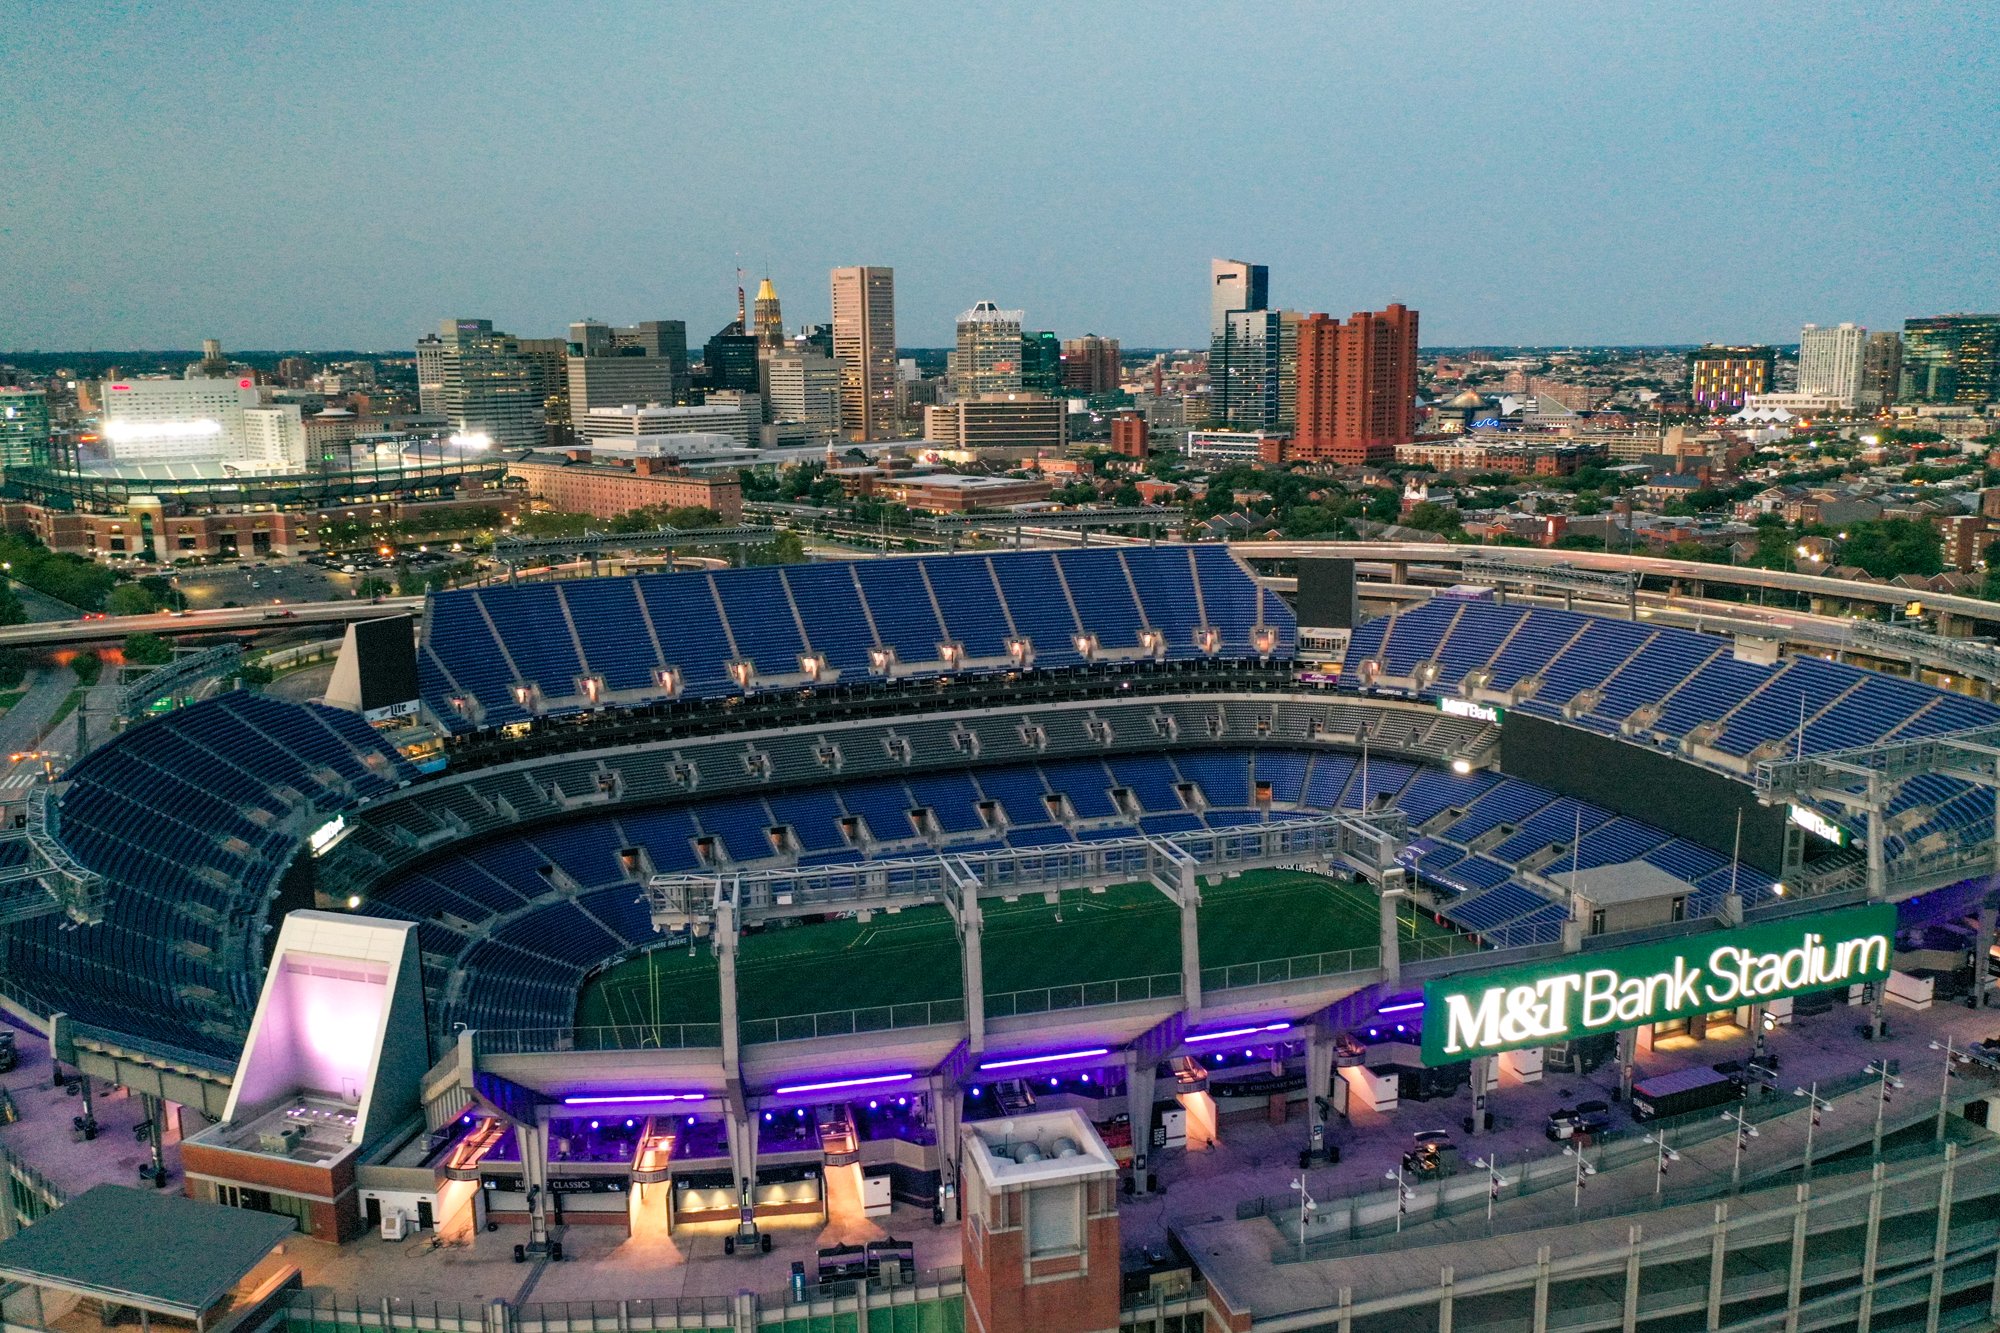 Baltimore Ravens M&amp;T Bank Stadium